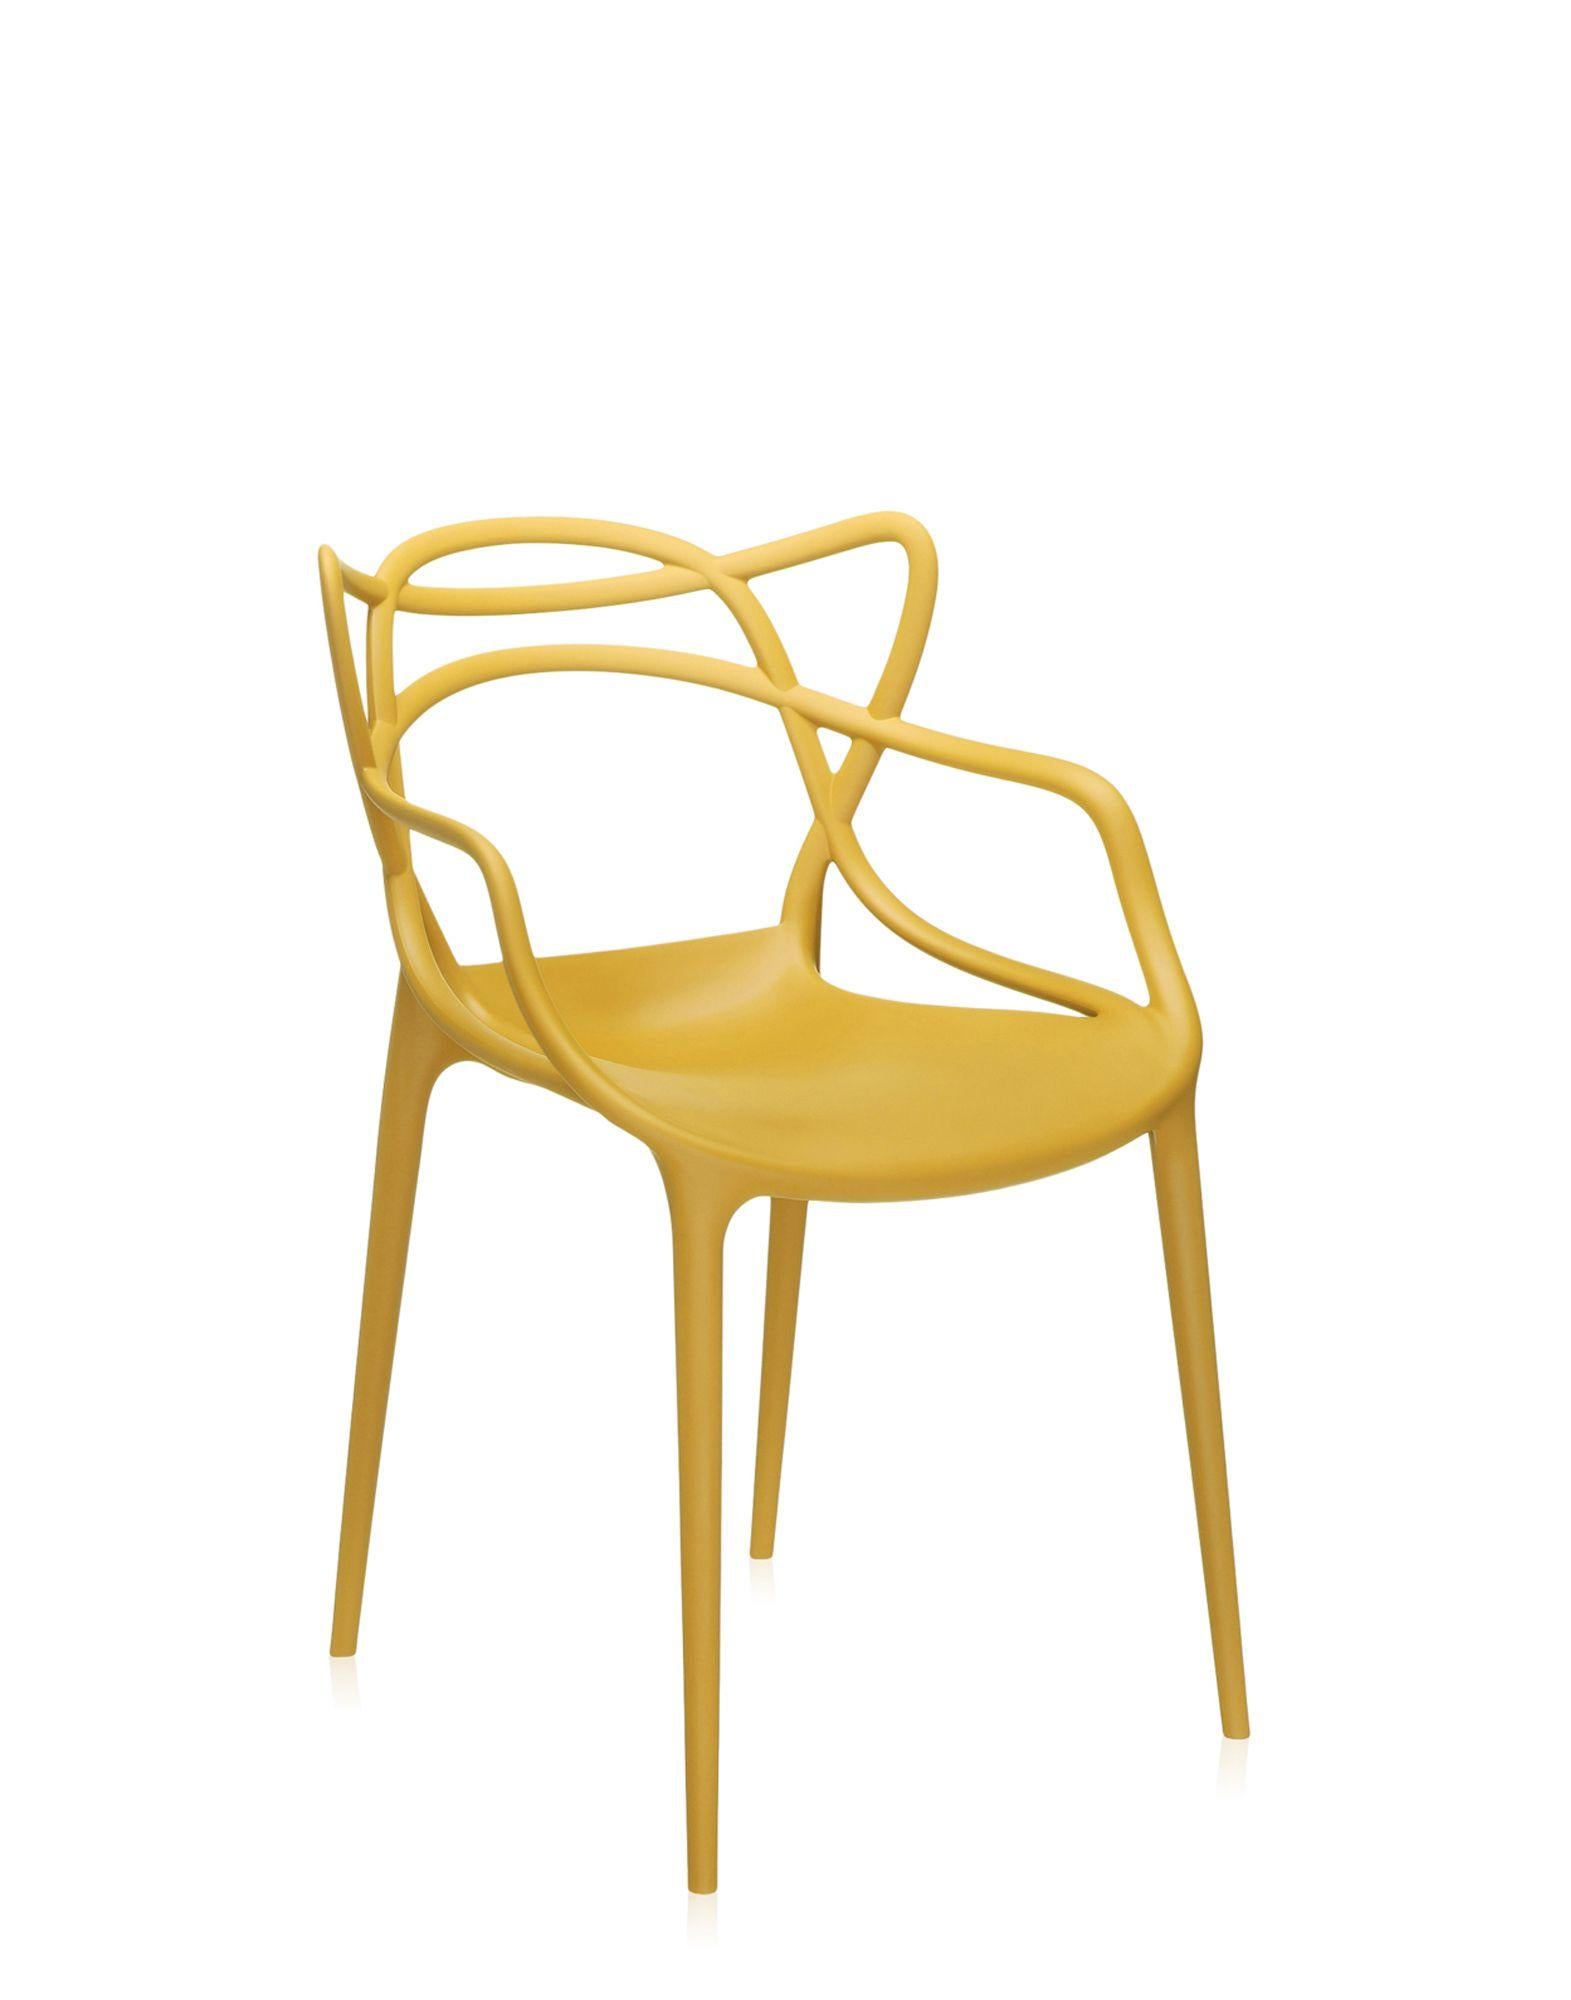 La chaise Masters est un hommage puissant à trois chaises symboliques, relues et réinterprétées par le génie créatif de Starck. Les silhouettes incomparables de la Série 7 d'Arne Jacobsen, du fauteuil Tulipe d'Eero Saarinen et de la chaise Eiffel de